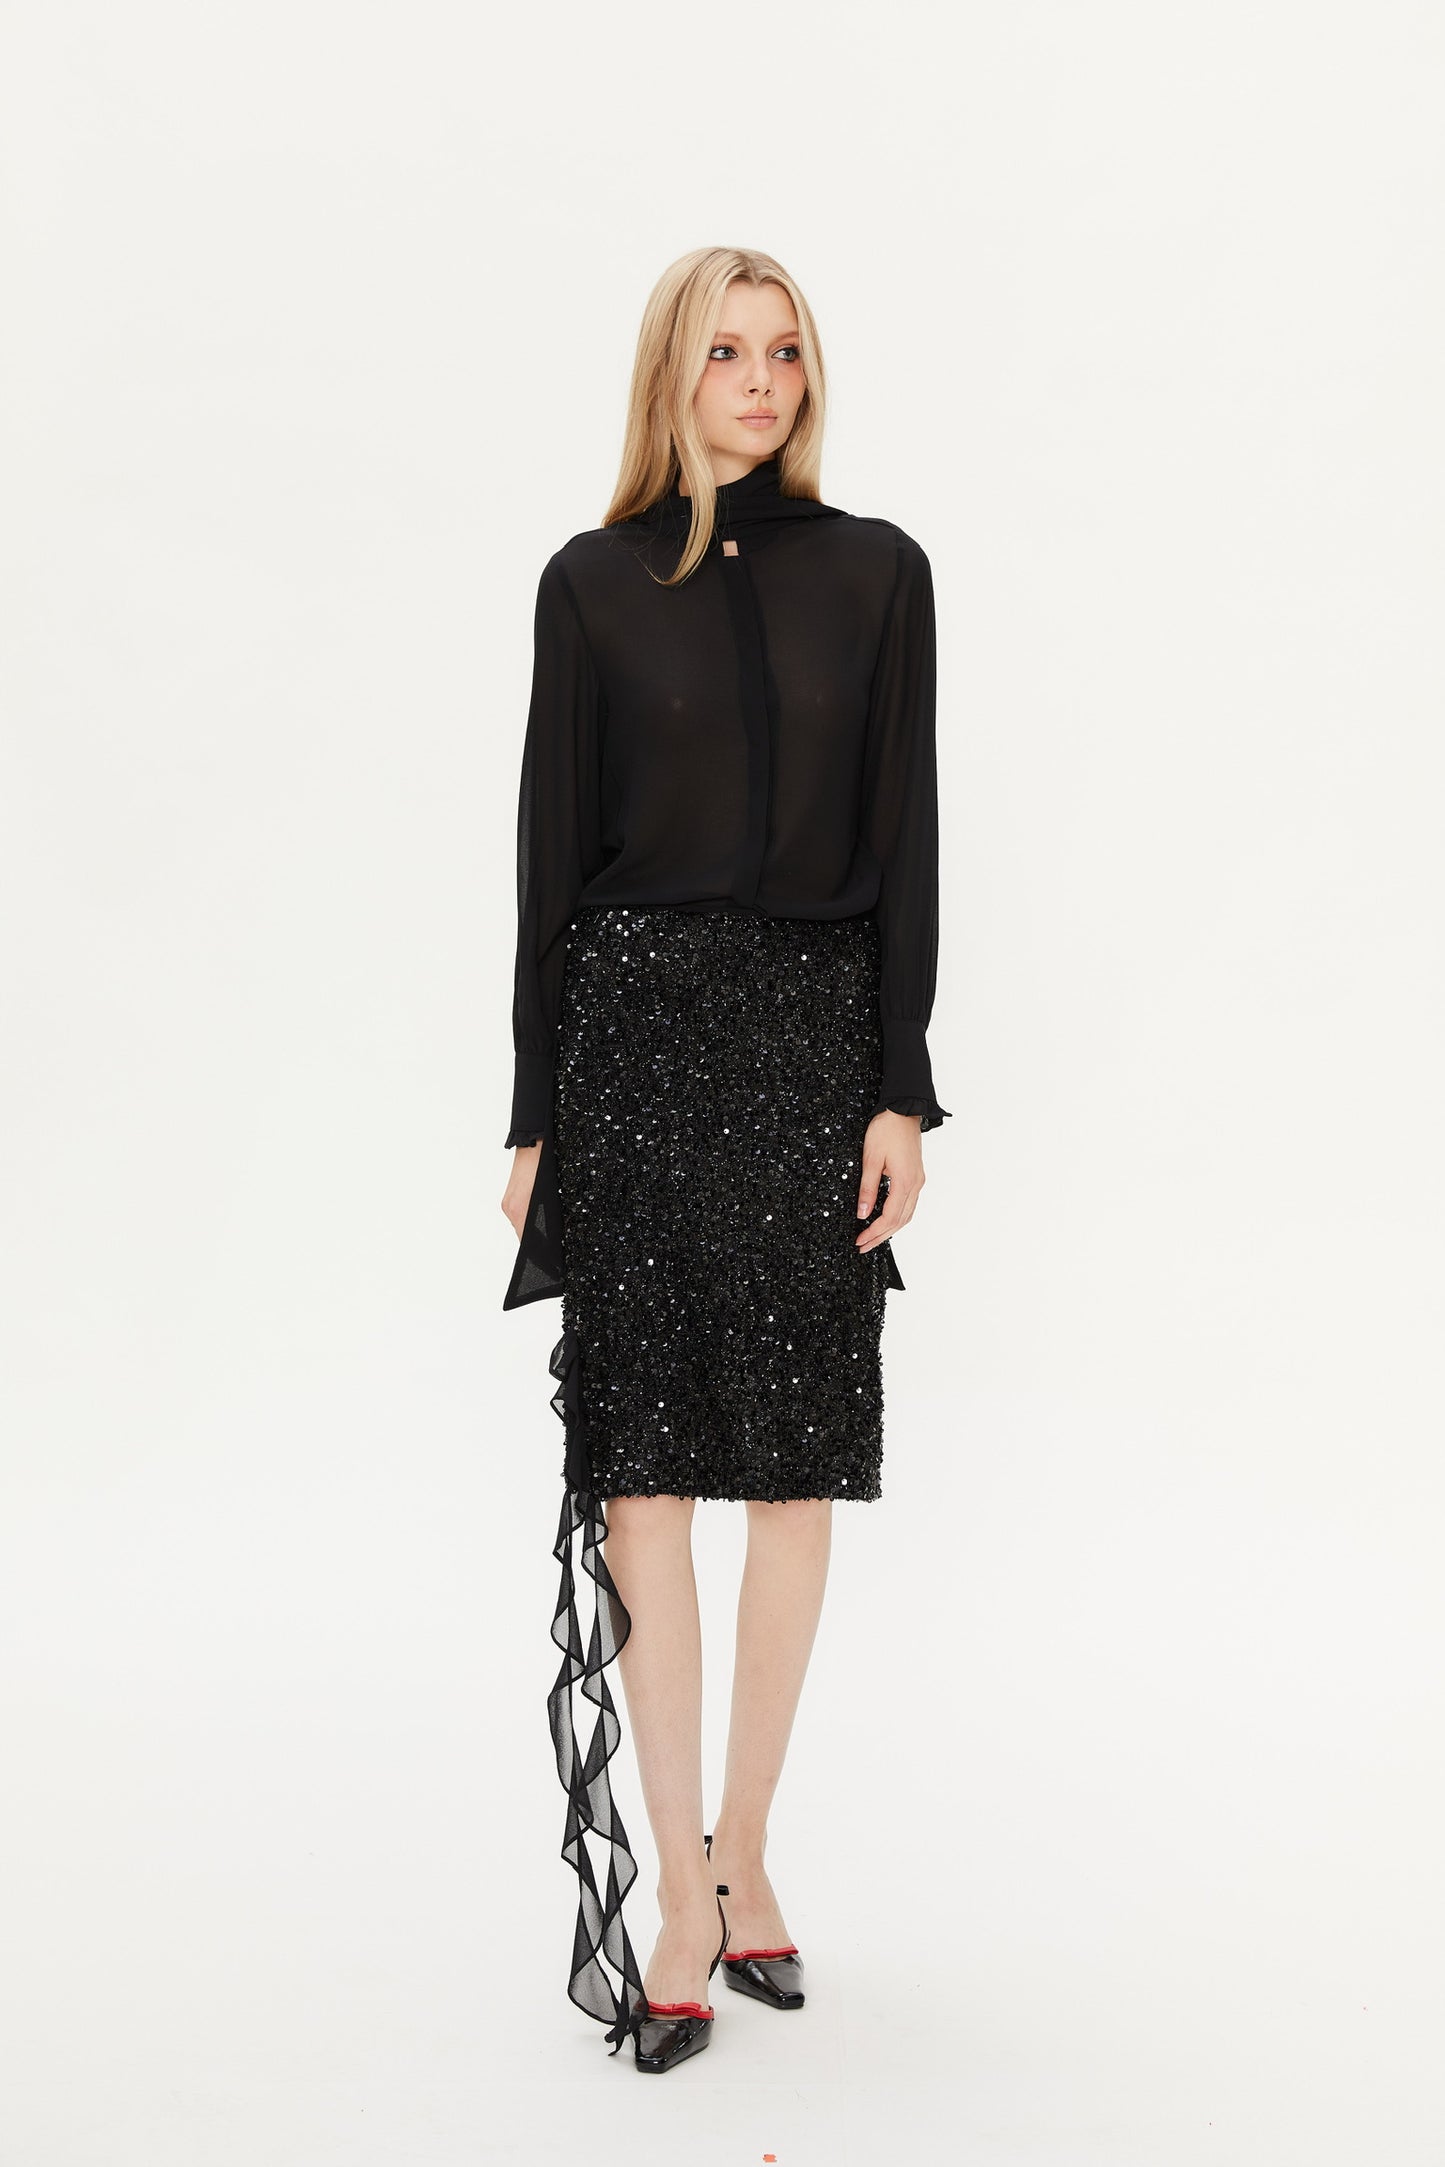 Liz Lace Embellished Skirt in Black